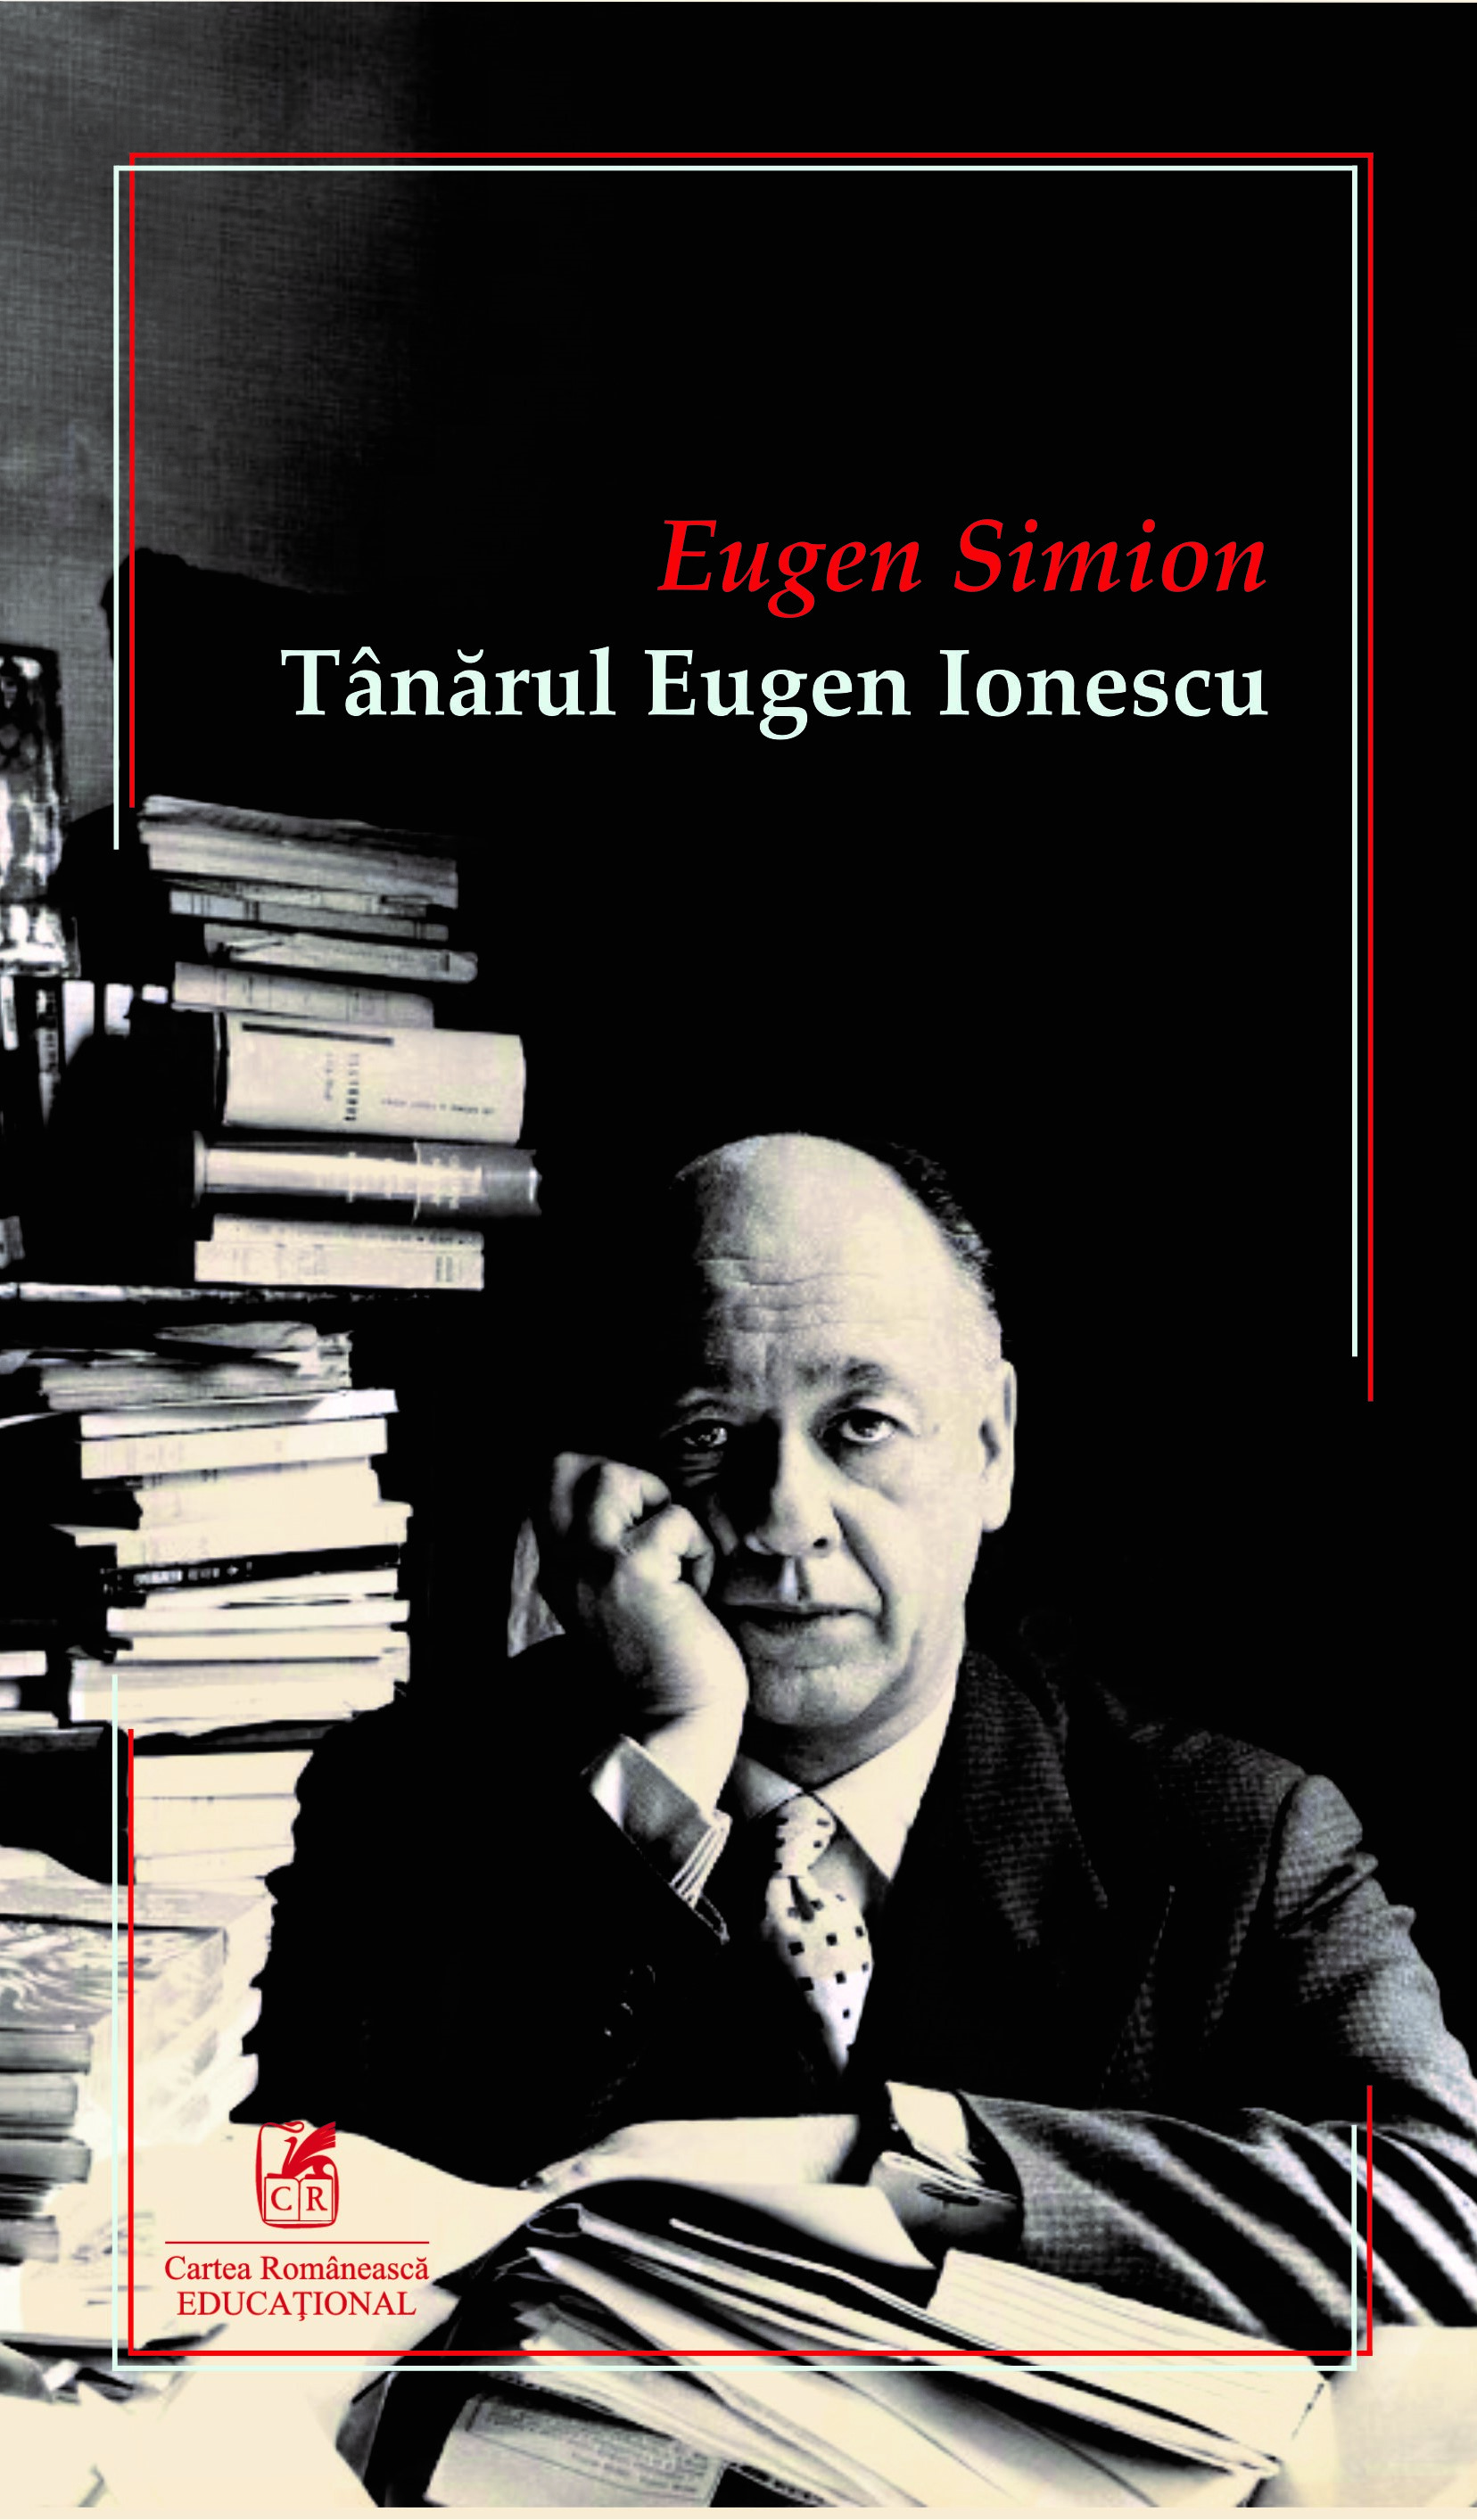 PDF Tanarul Eugen Ionescu | Eugen Simion Cartea Romaneasca educational Carte